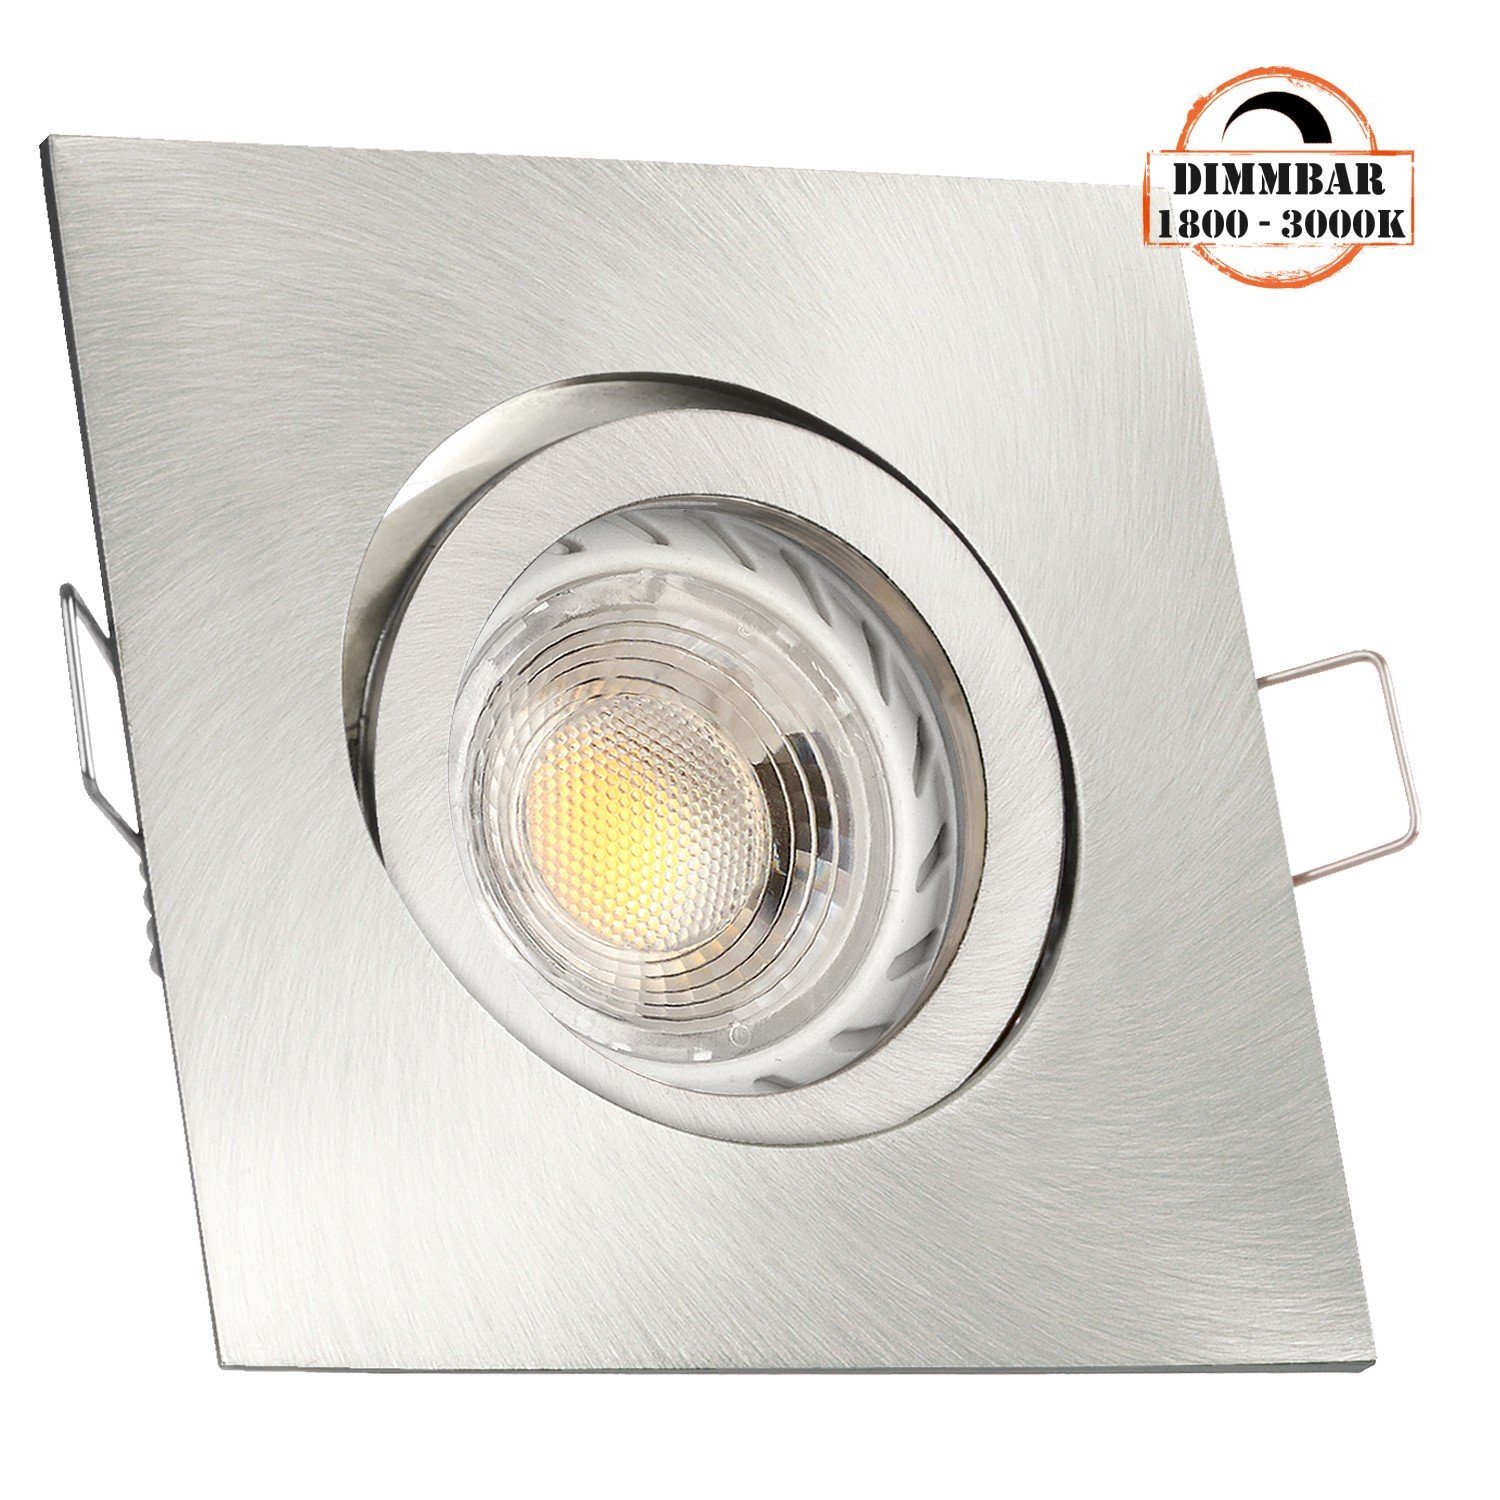 LEDANDO LED Einbaustrahler LED Einbaustrahler Set GU10 in edelstahl / silber gebürstet mit 5,5W L